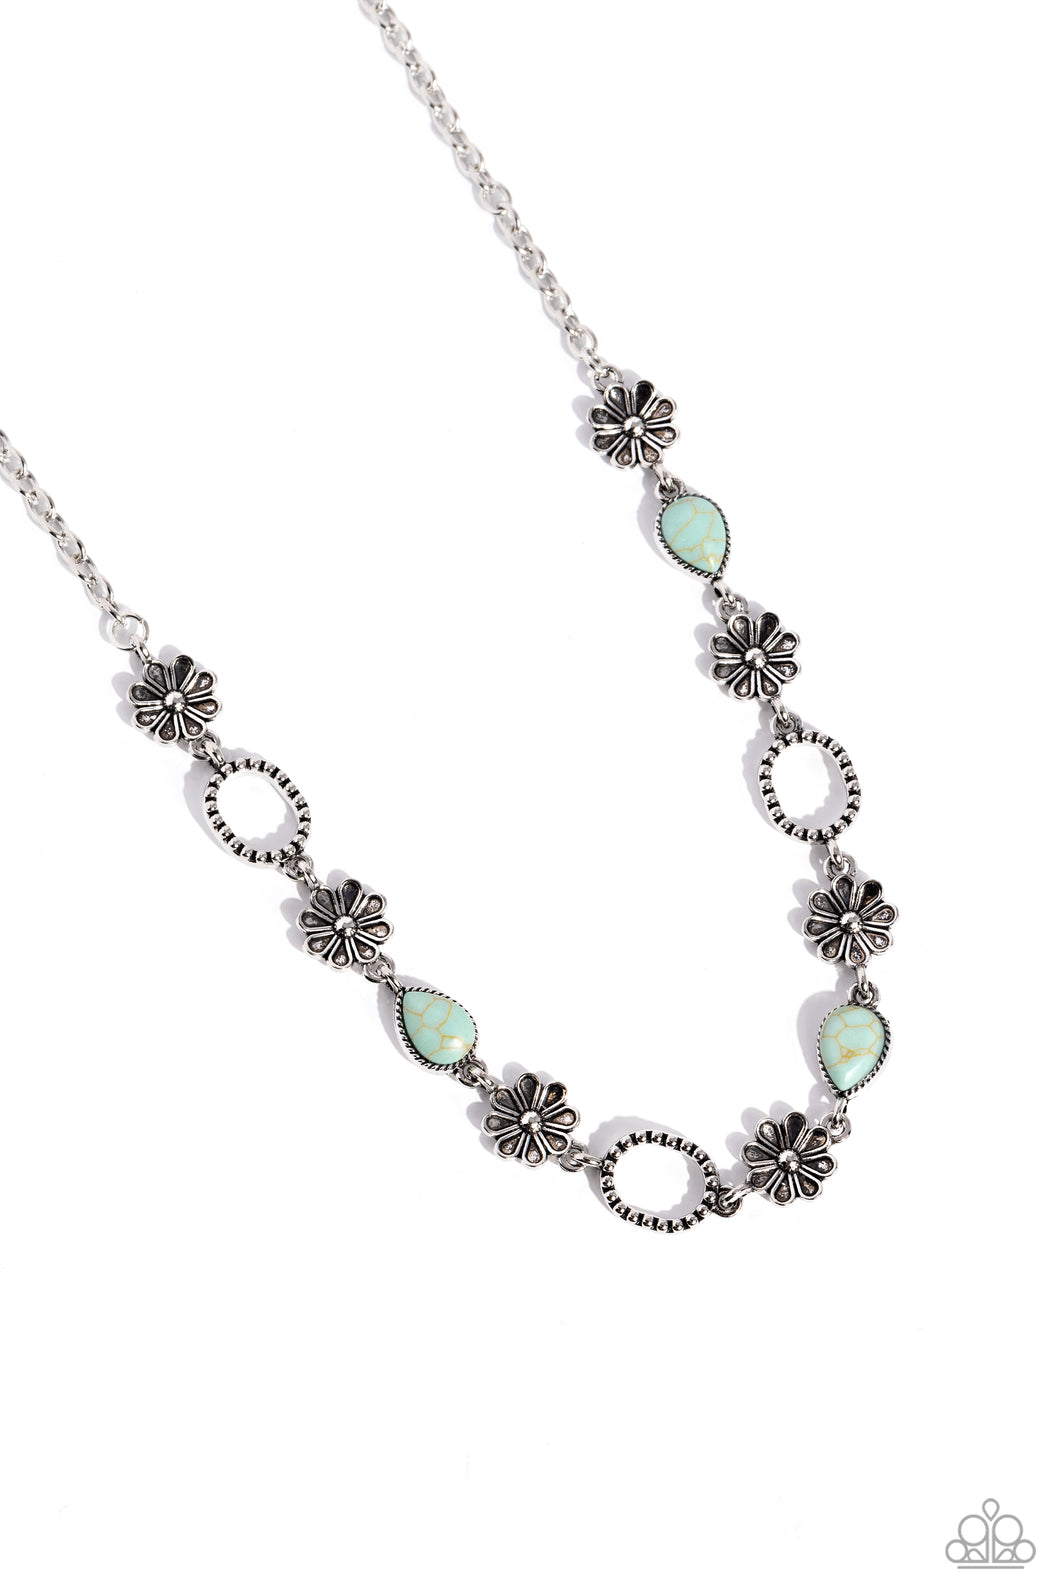 Casablanca Chic Necklace & Casablanca Craze Bracelet- Set 🌞 Blue